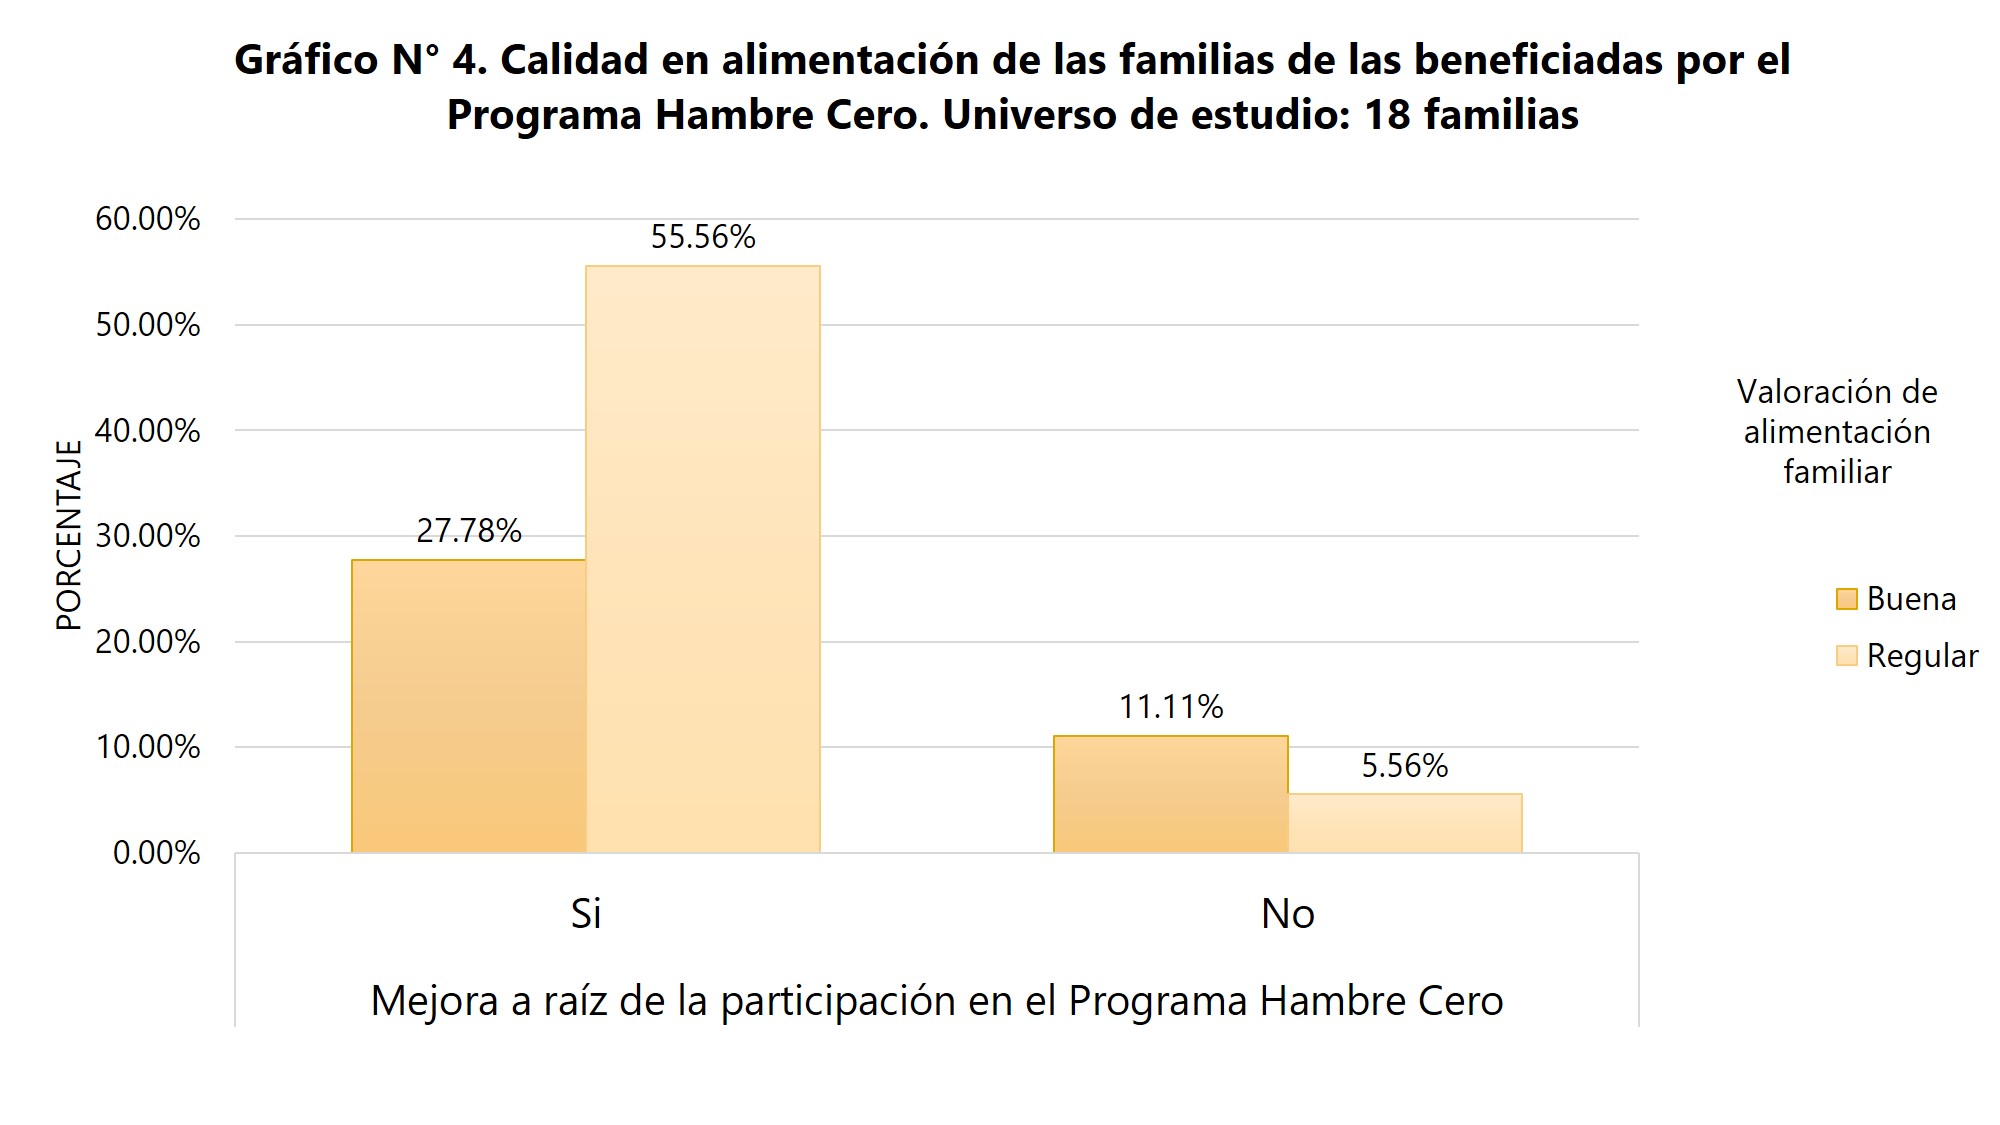 Calidad en la alimentación de las familias de las beneficiadas por el programa Hambre cer. Universo de estudio: 18 familias 